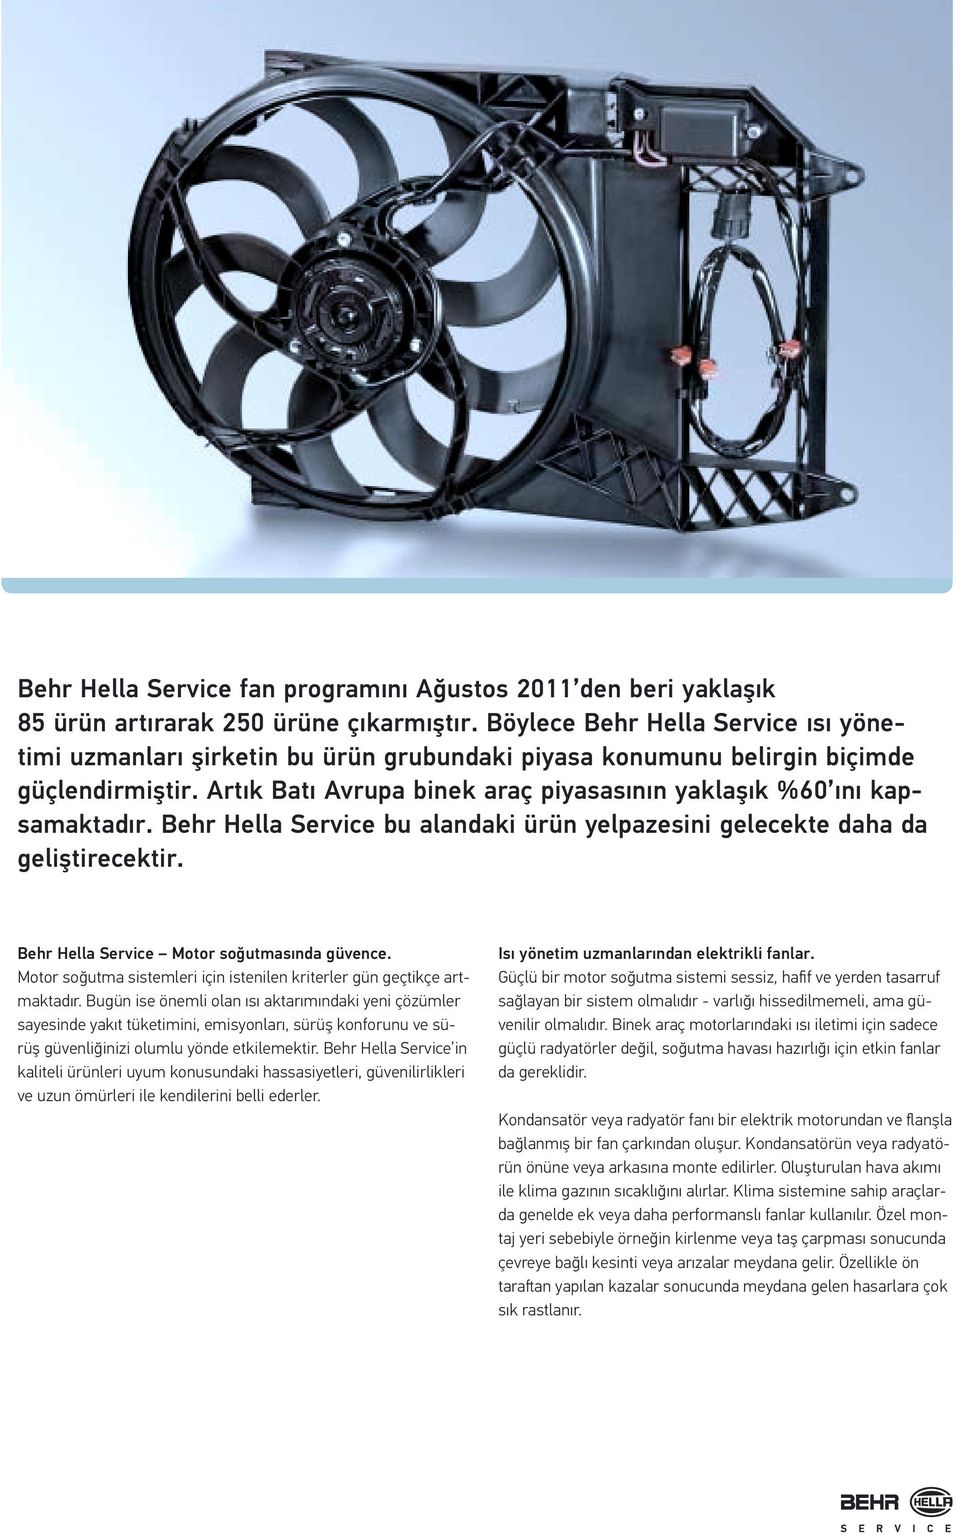 Behr Hella Service bu alandaki ürün yelpazesini gelecekte daha da geliştirecektir. Behr Hella Service Motor soğutmasında güvence.